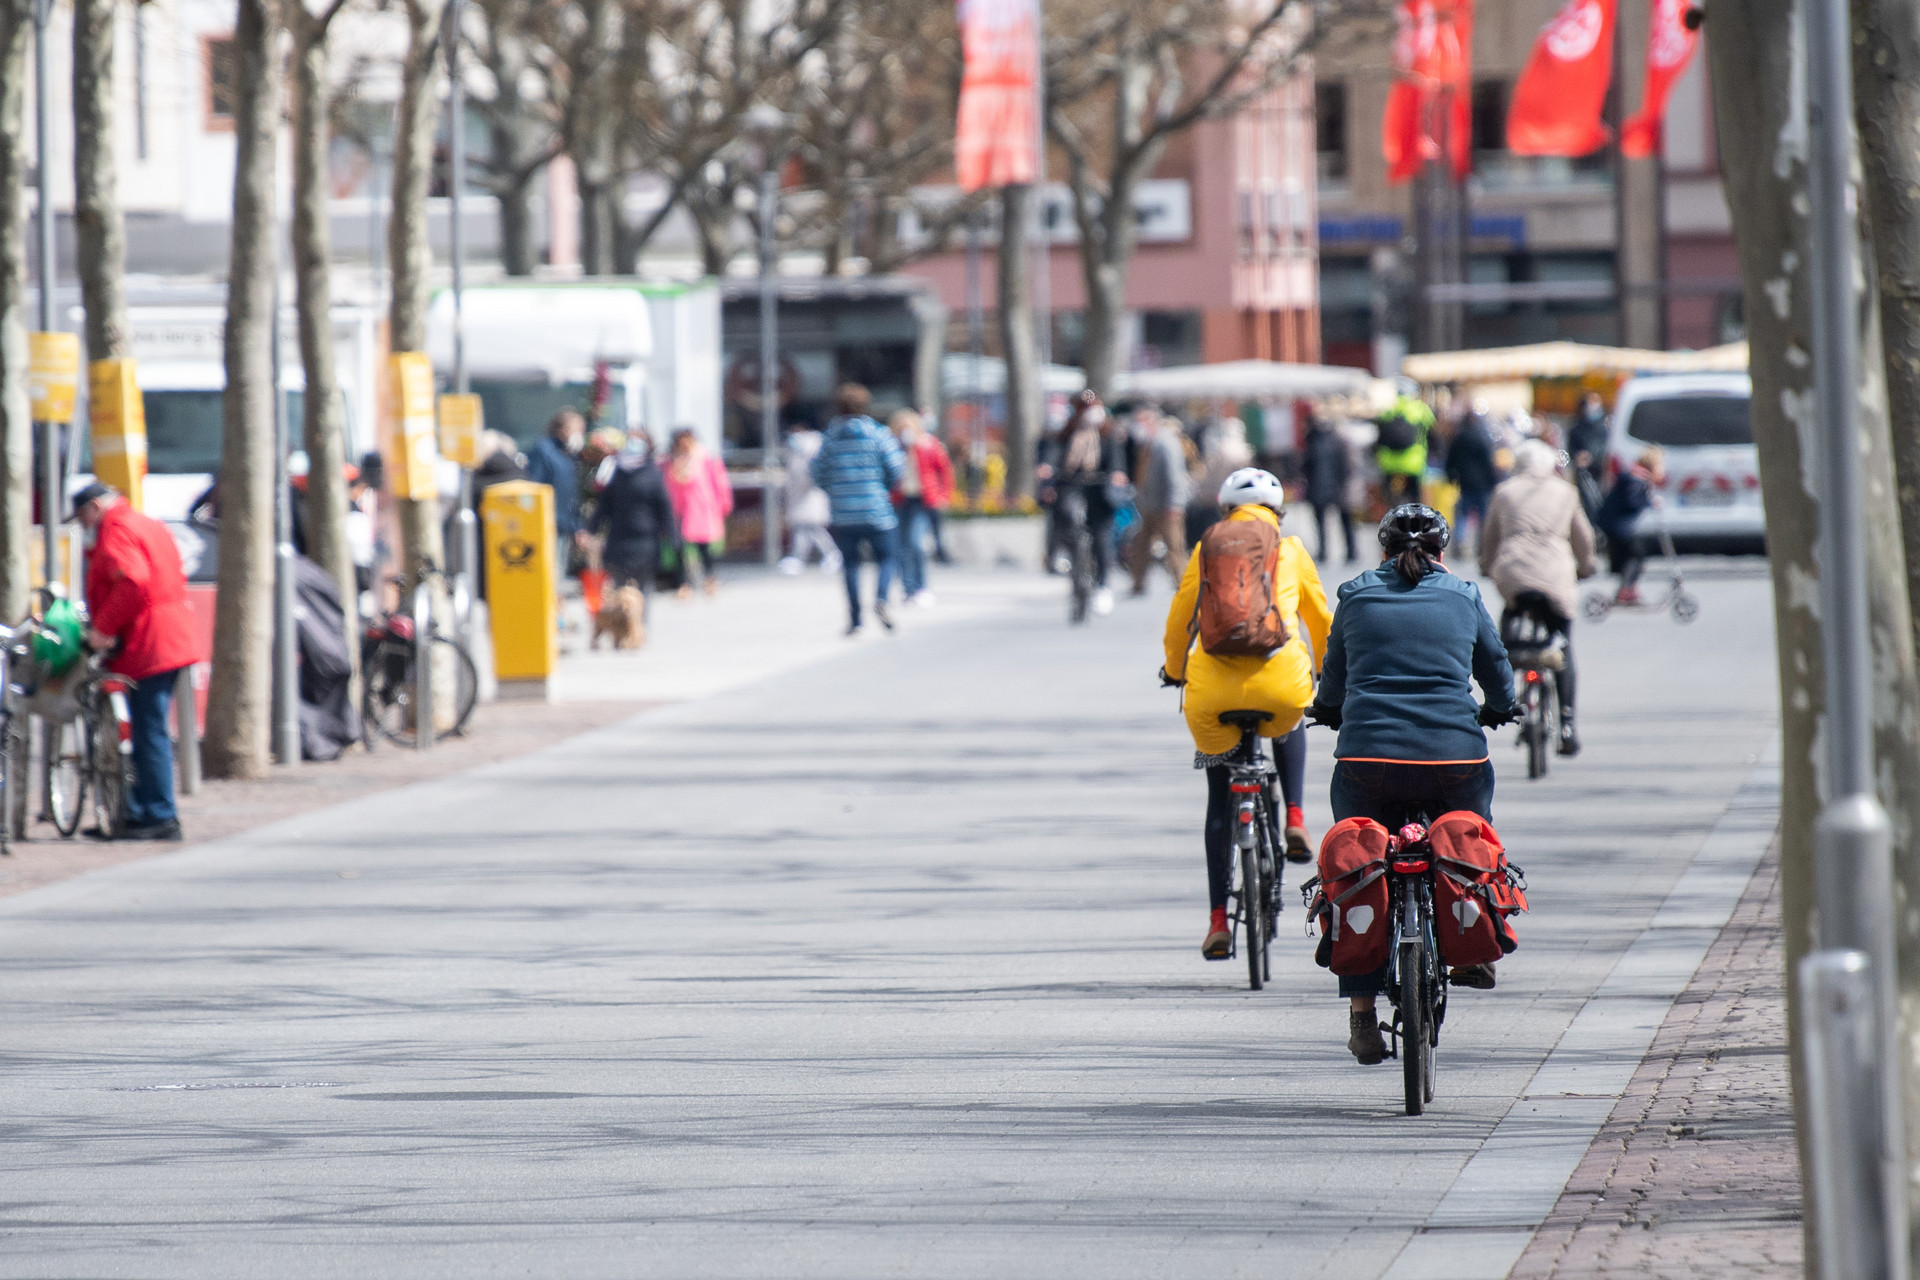 Immer mehr Menschen steigen aufs Fahrrad. Dort wie steht es mit der entsprechenden Infrastruktur? © dpa/Sebastian Gollnow